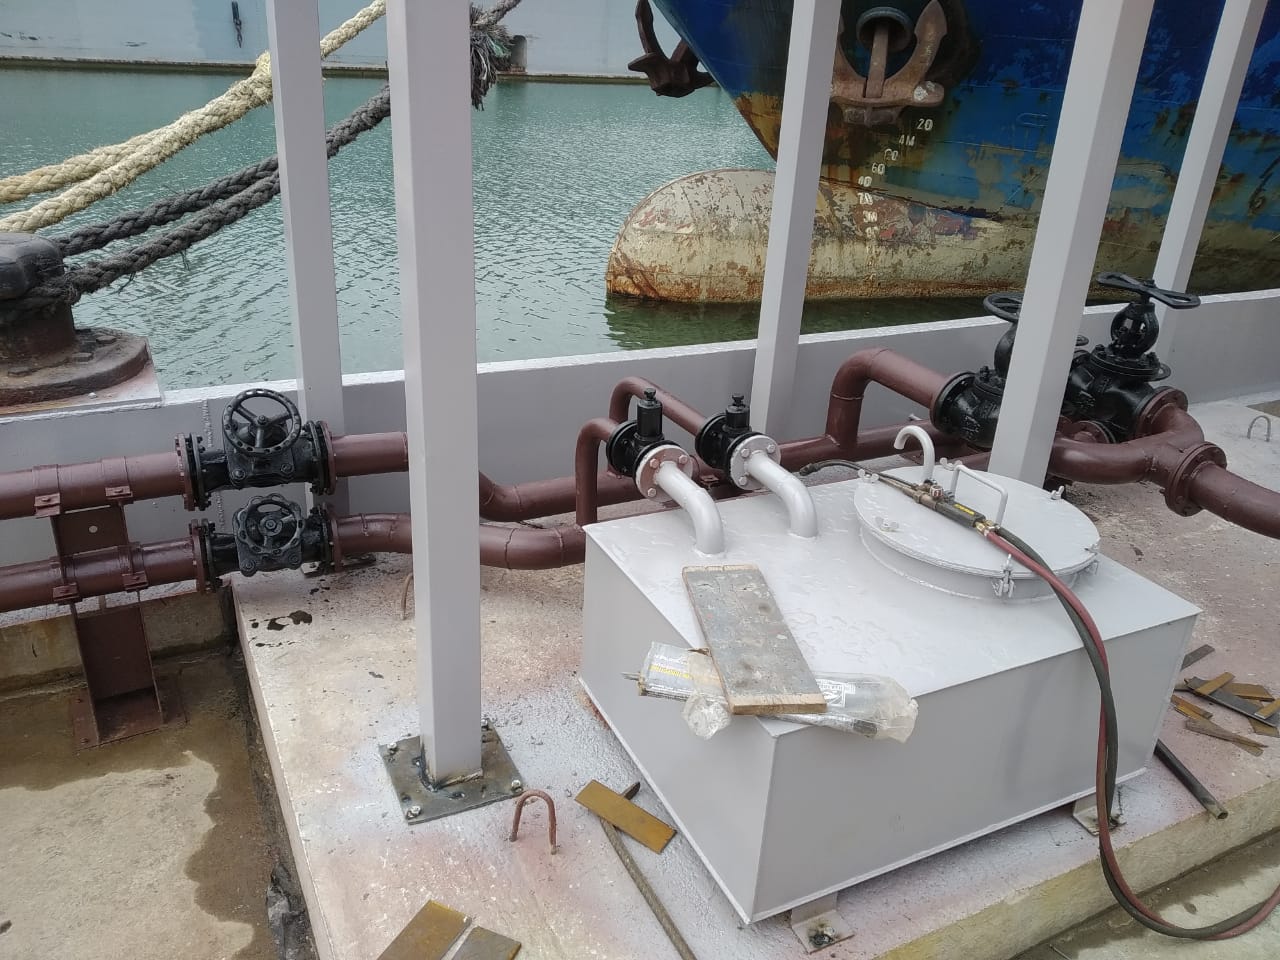 Переоборудование плавучих железобетонных причалов типа ПЖ-61М для осуществления погрузочно-разгрузочной деятельности применительно к нефтепродуктам в морских и речных портах